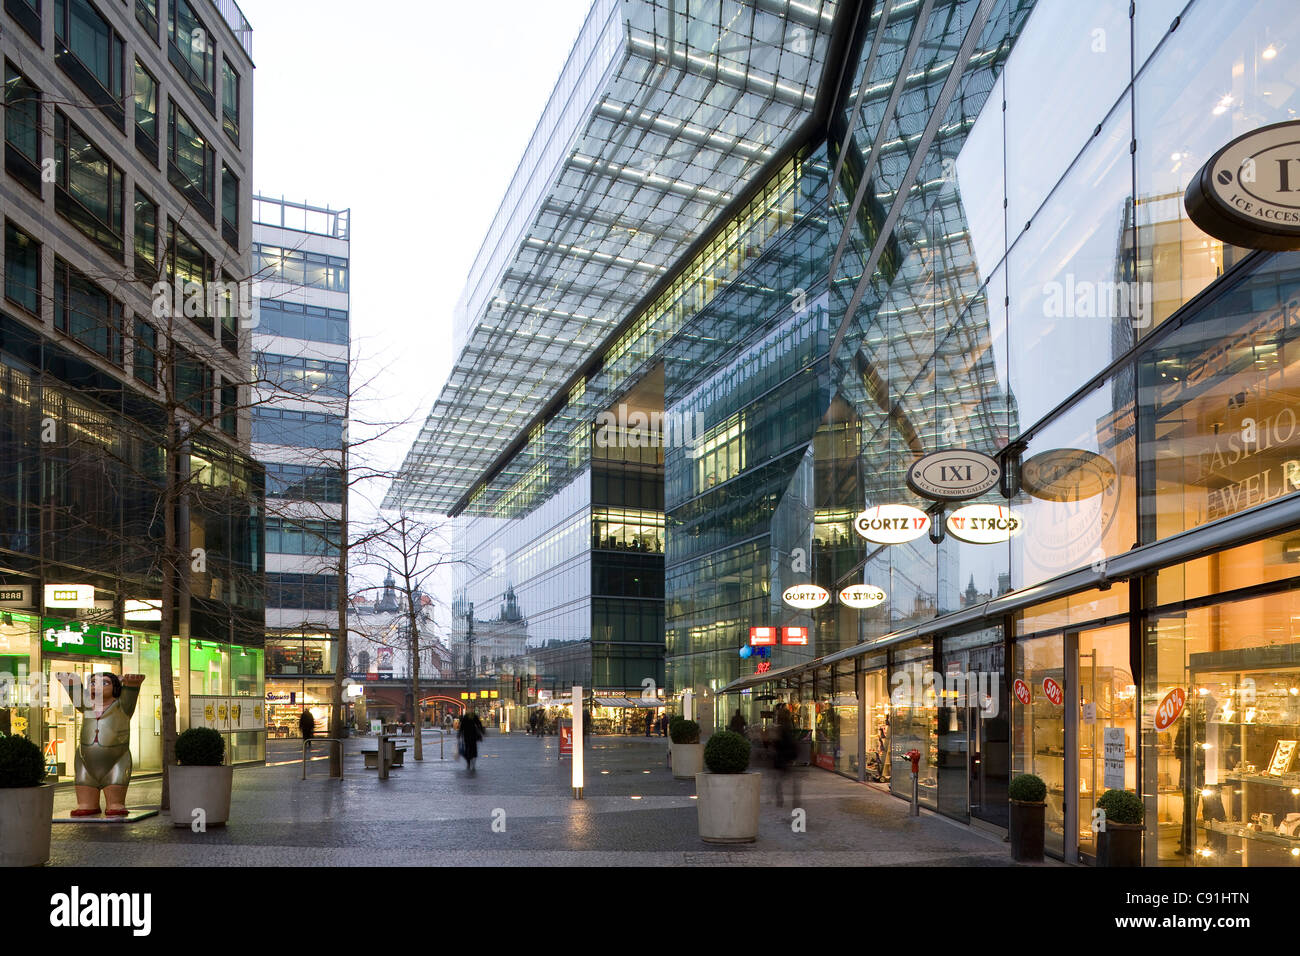 Geschäfte hinter Glasfassaden, Neues Kranzler Eck, Berlin-Charlottenburg, Berlin, Deutschland, Europa Stockfoto